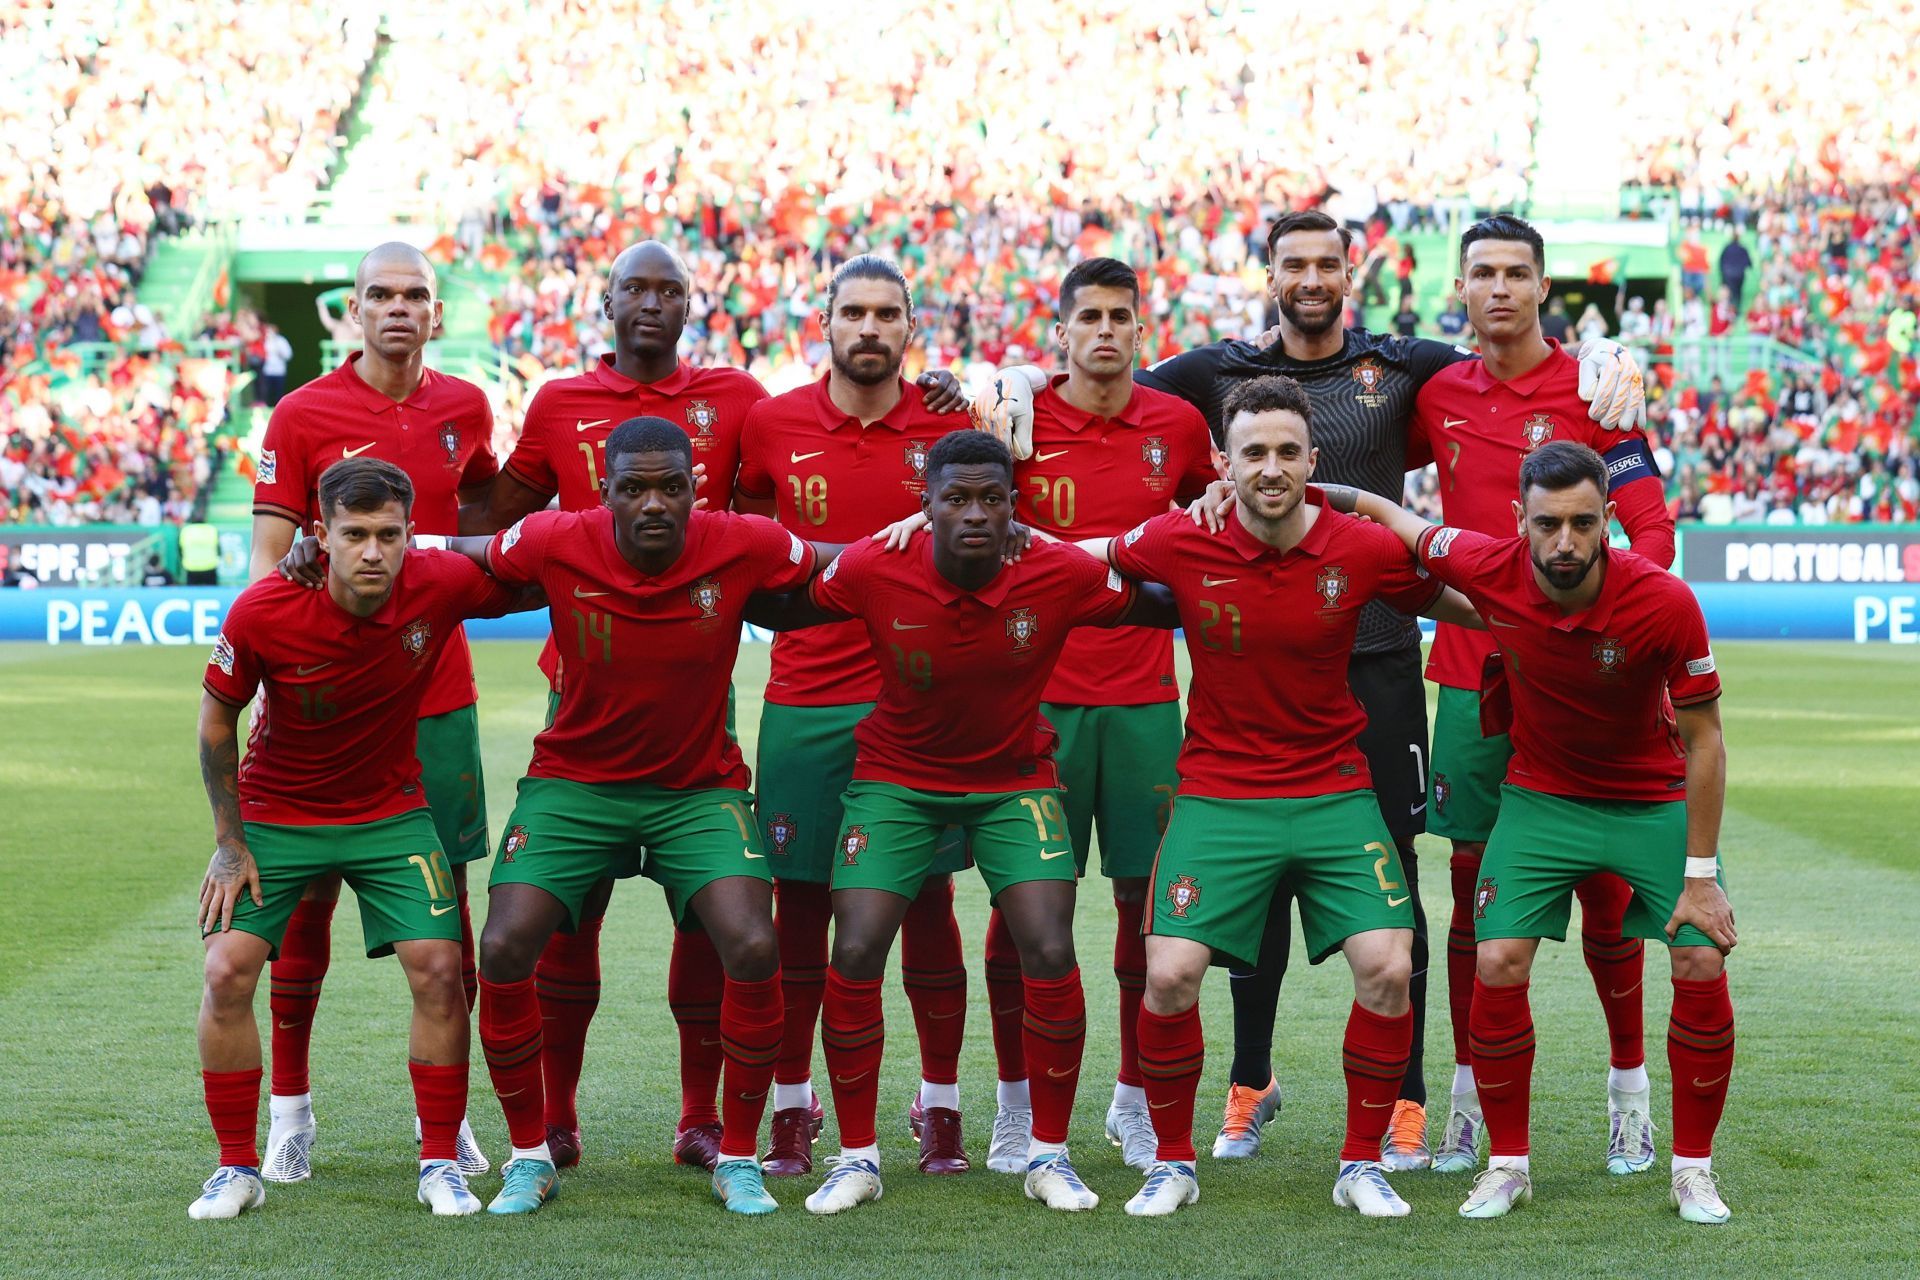 Portugal impressed against Switzerland